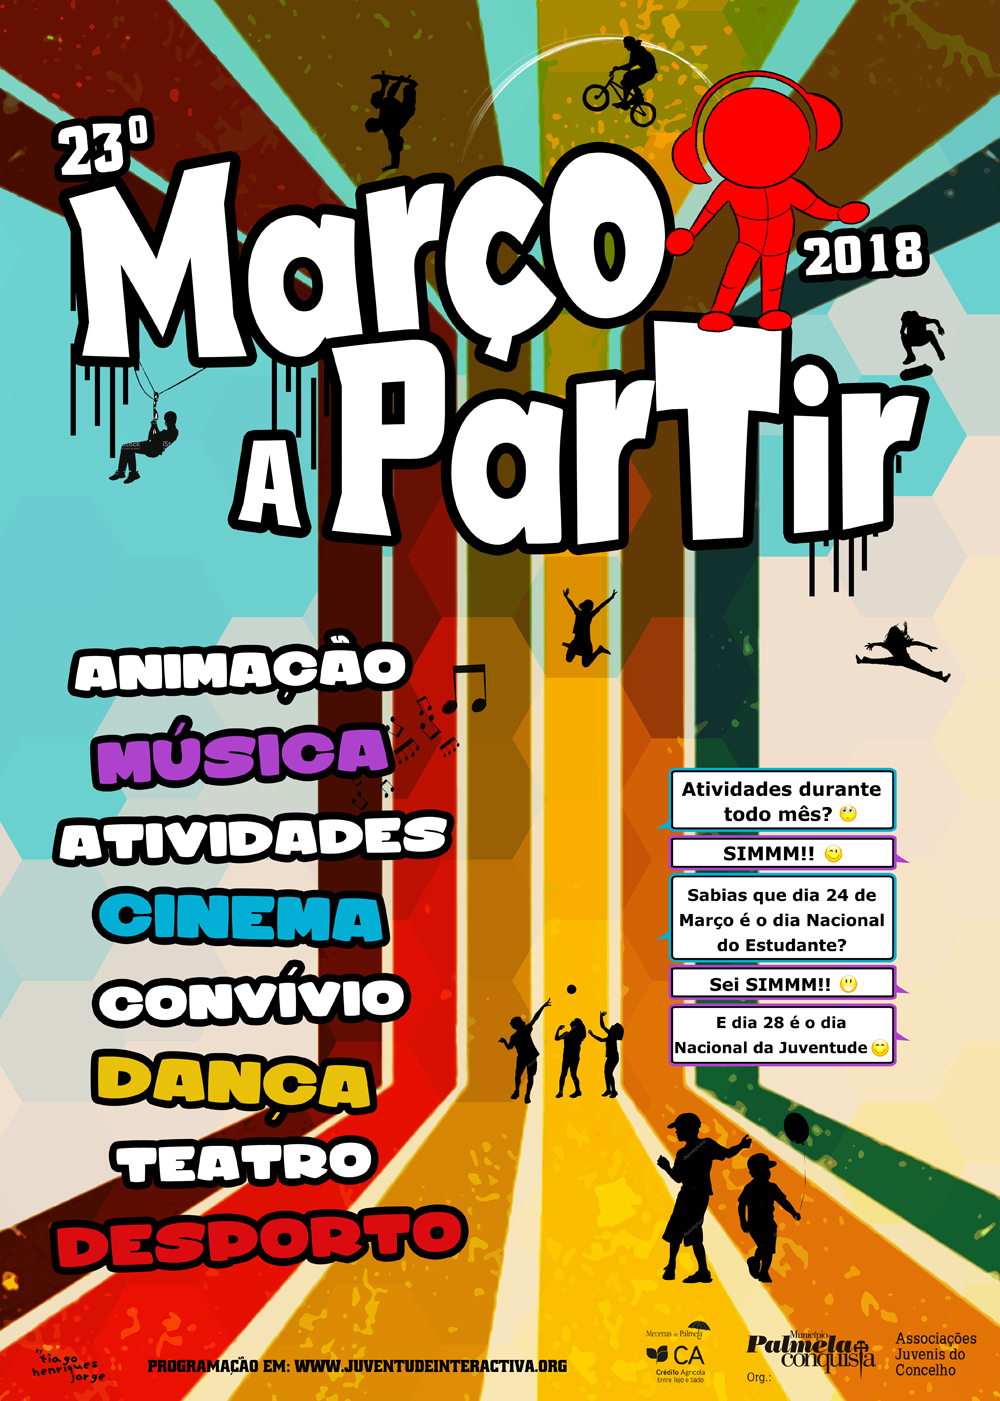 MARÇO A PARTIR 2018